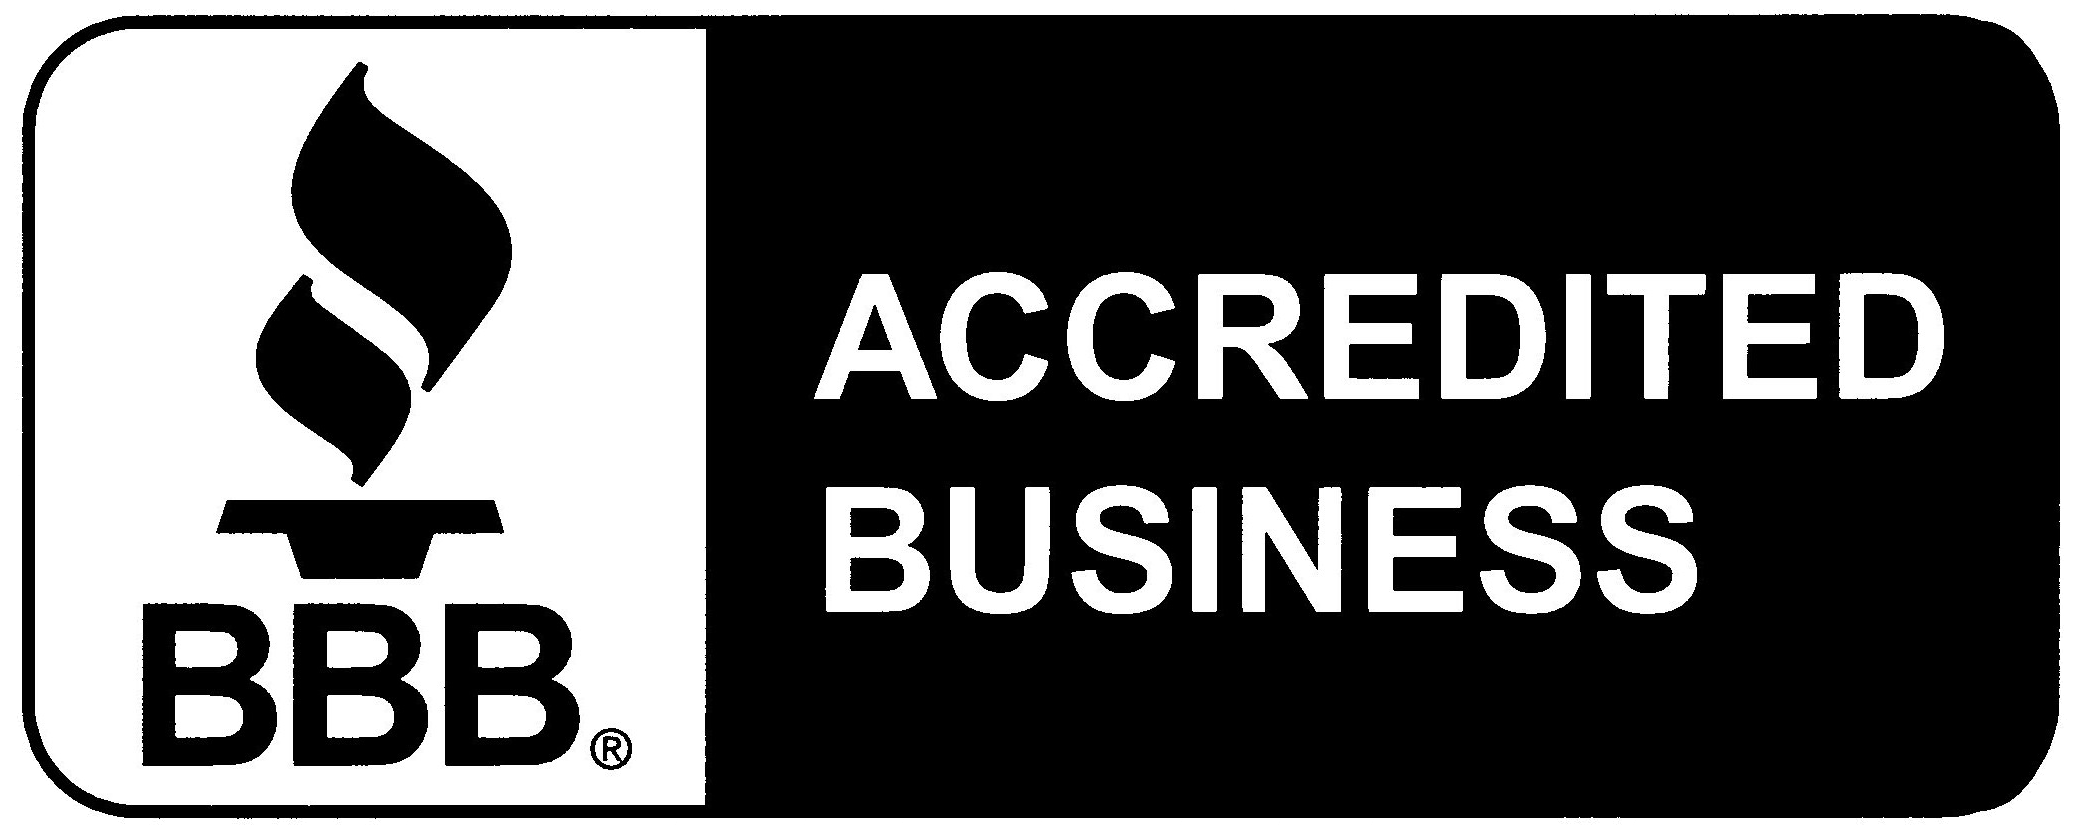 BBB Member Logo - Better business bureau Logos